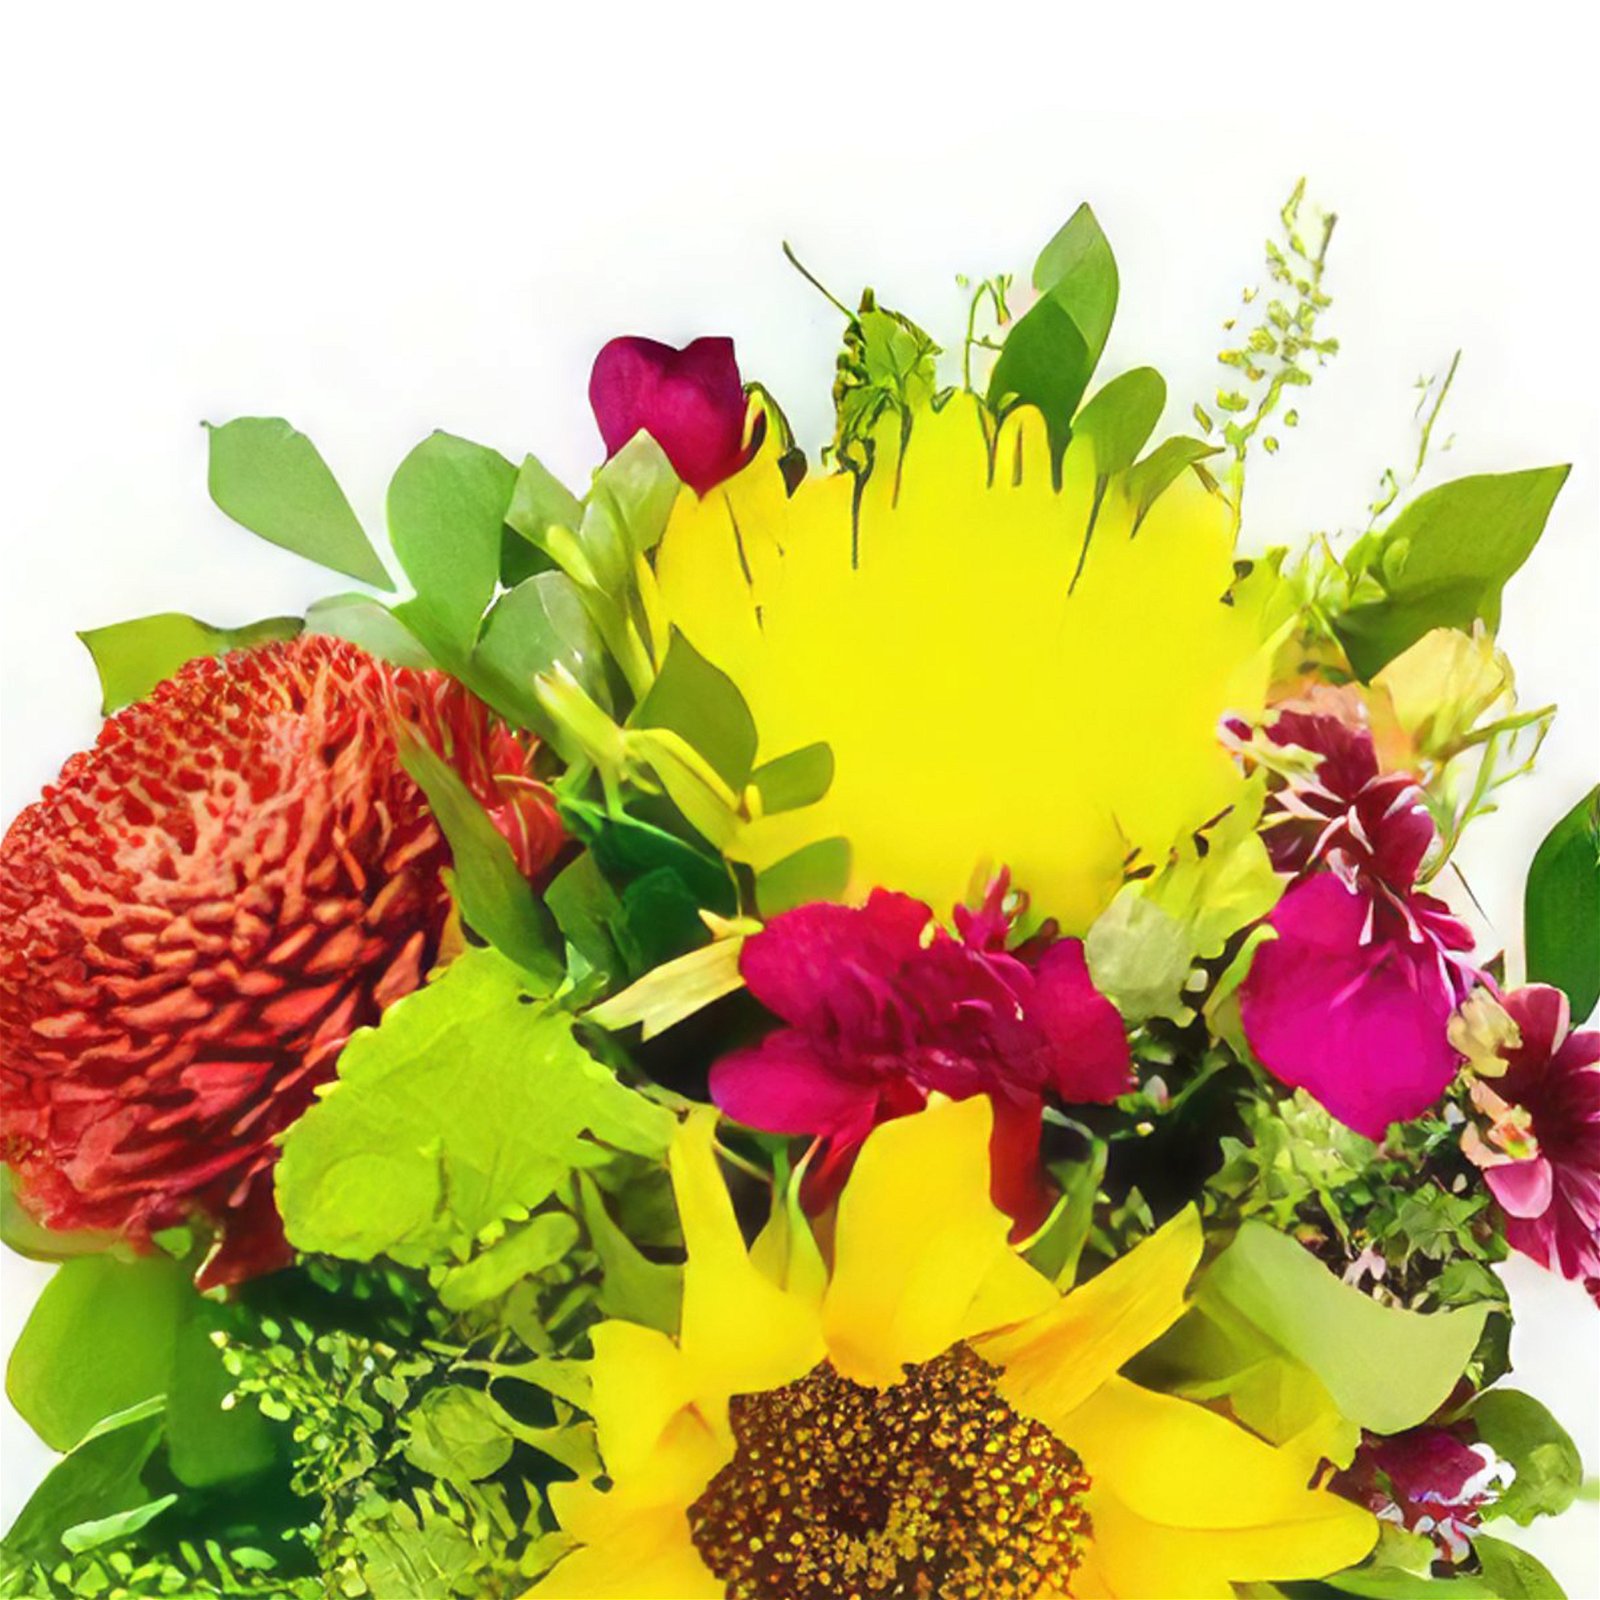 Lopez Pena Blumen Florist- Frühlingsliebe Bouquet/Blumenschmuck